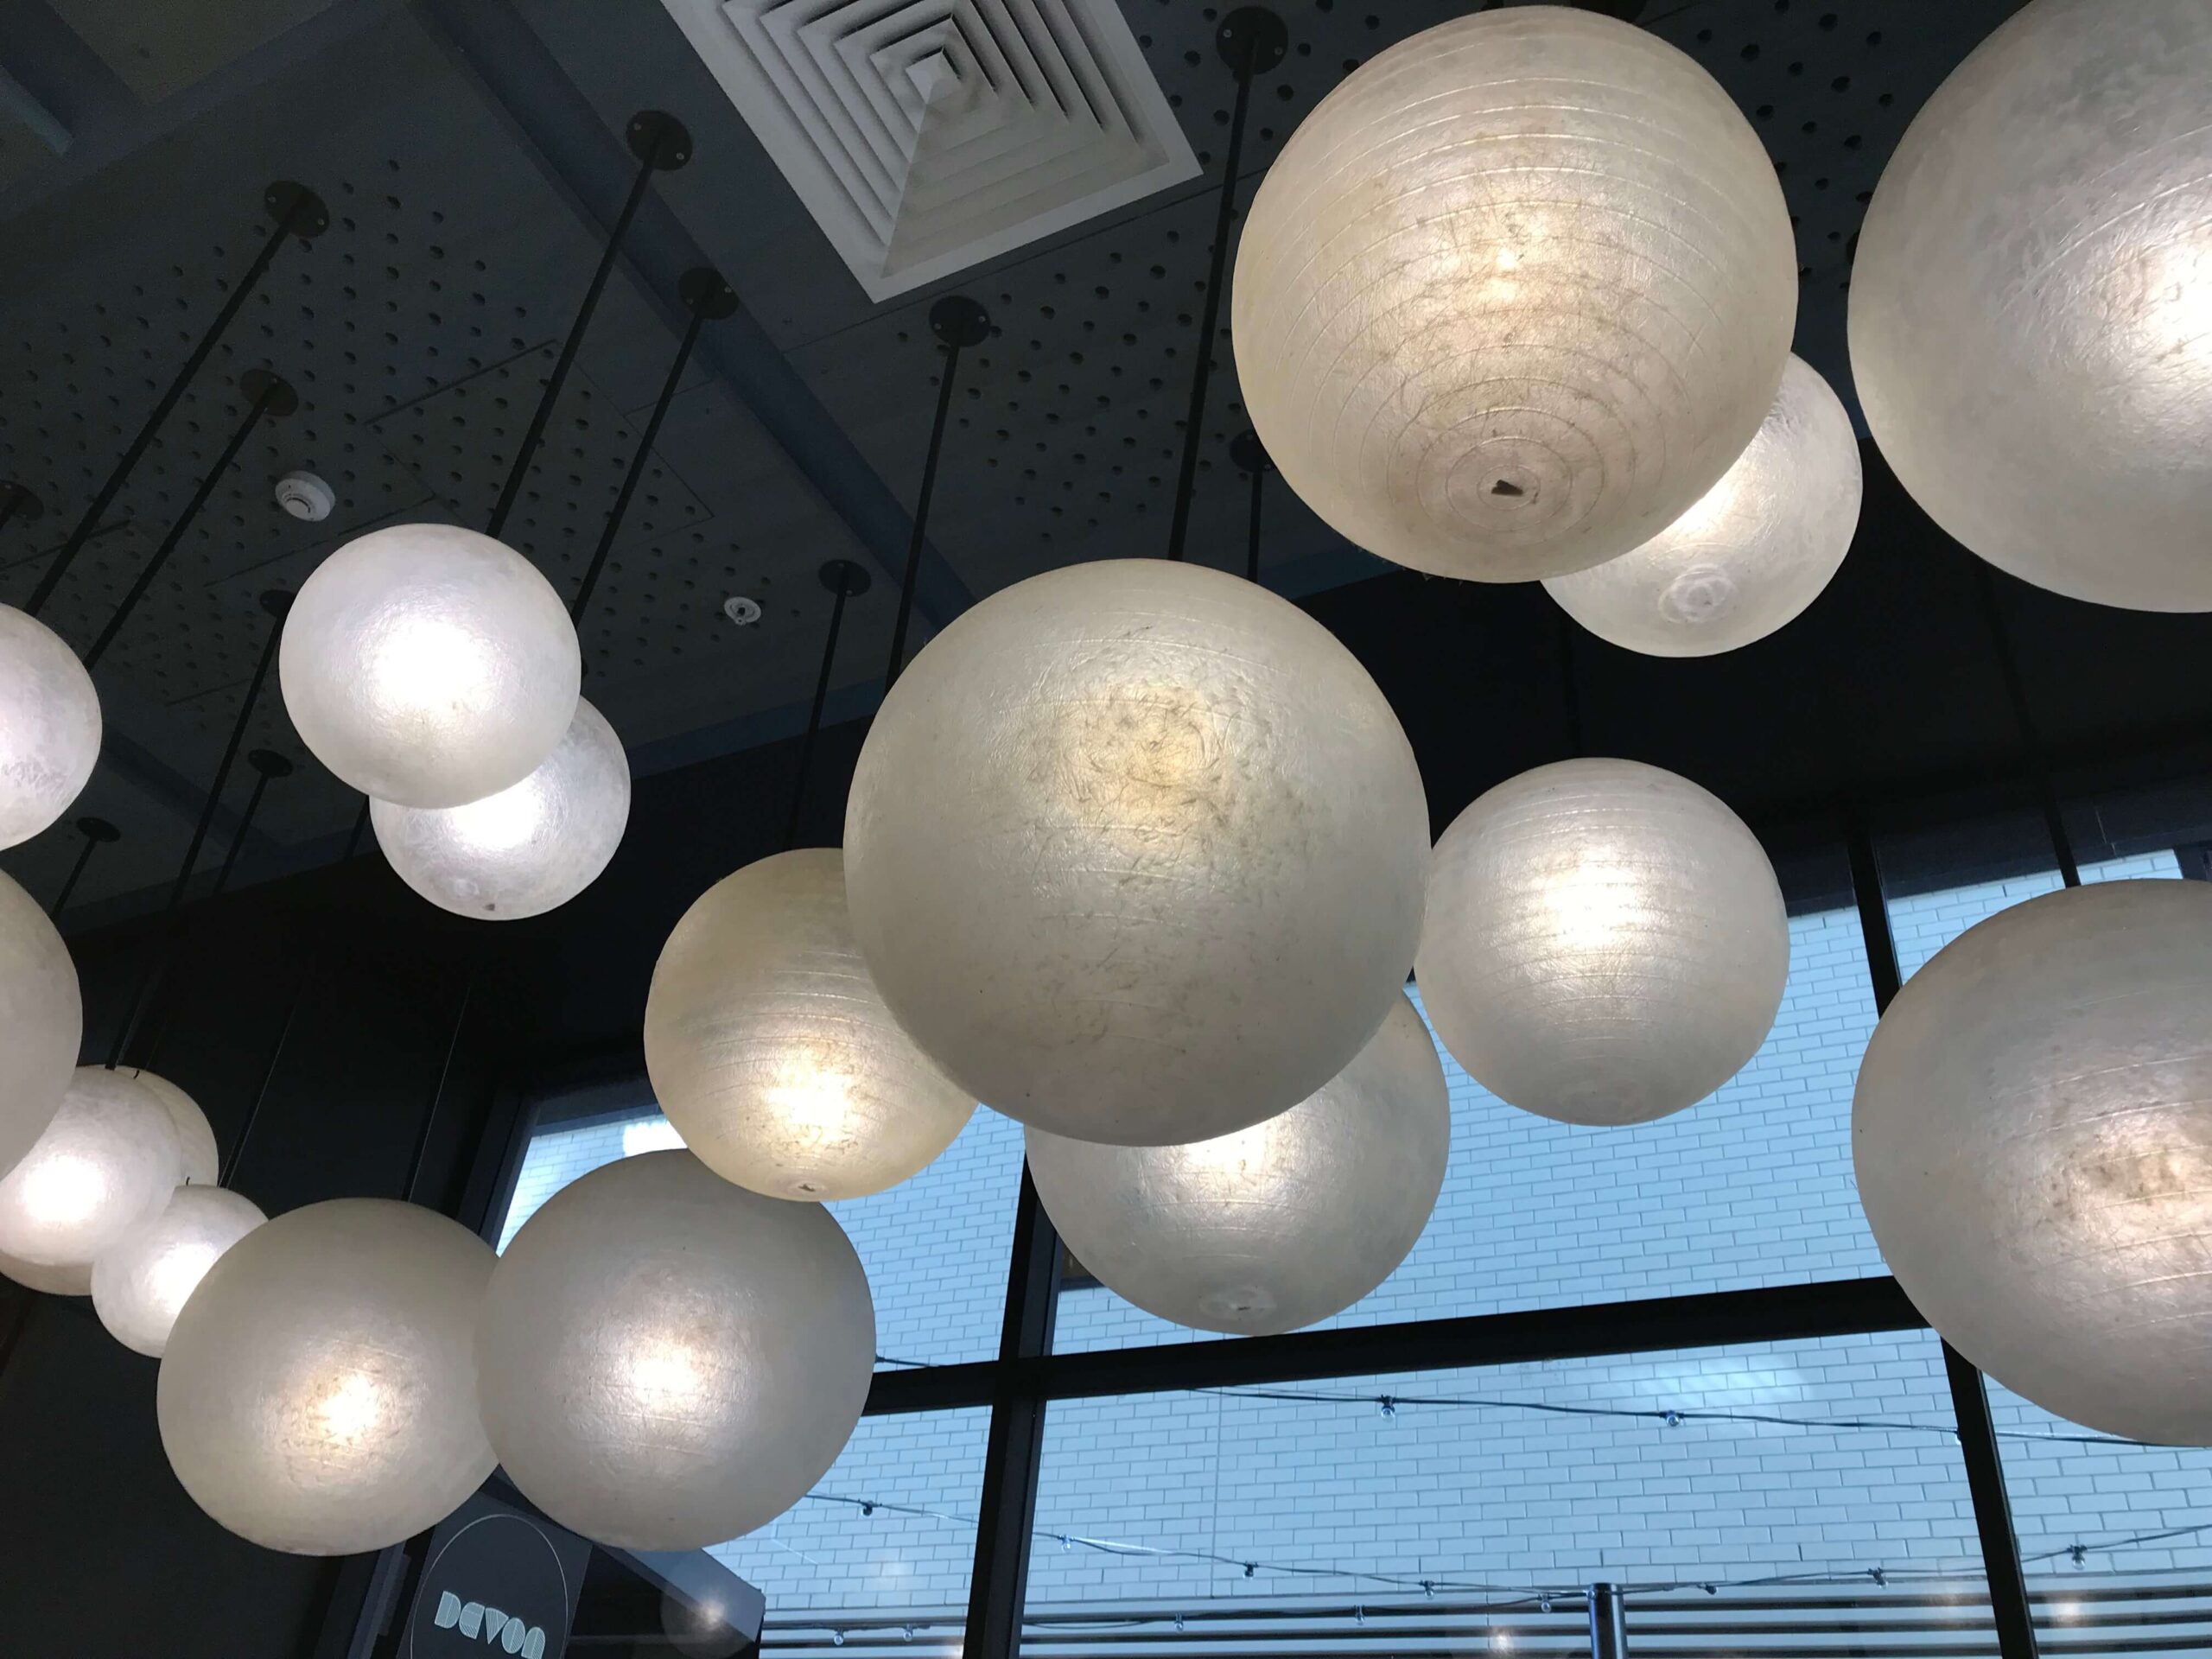 シドニーのカフェ【DEVON CAFE】の店内の照明を撮影した写真